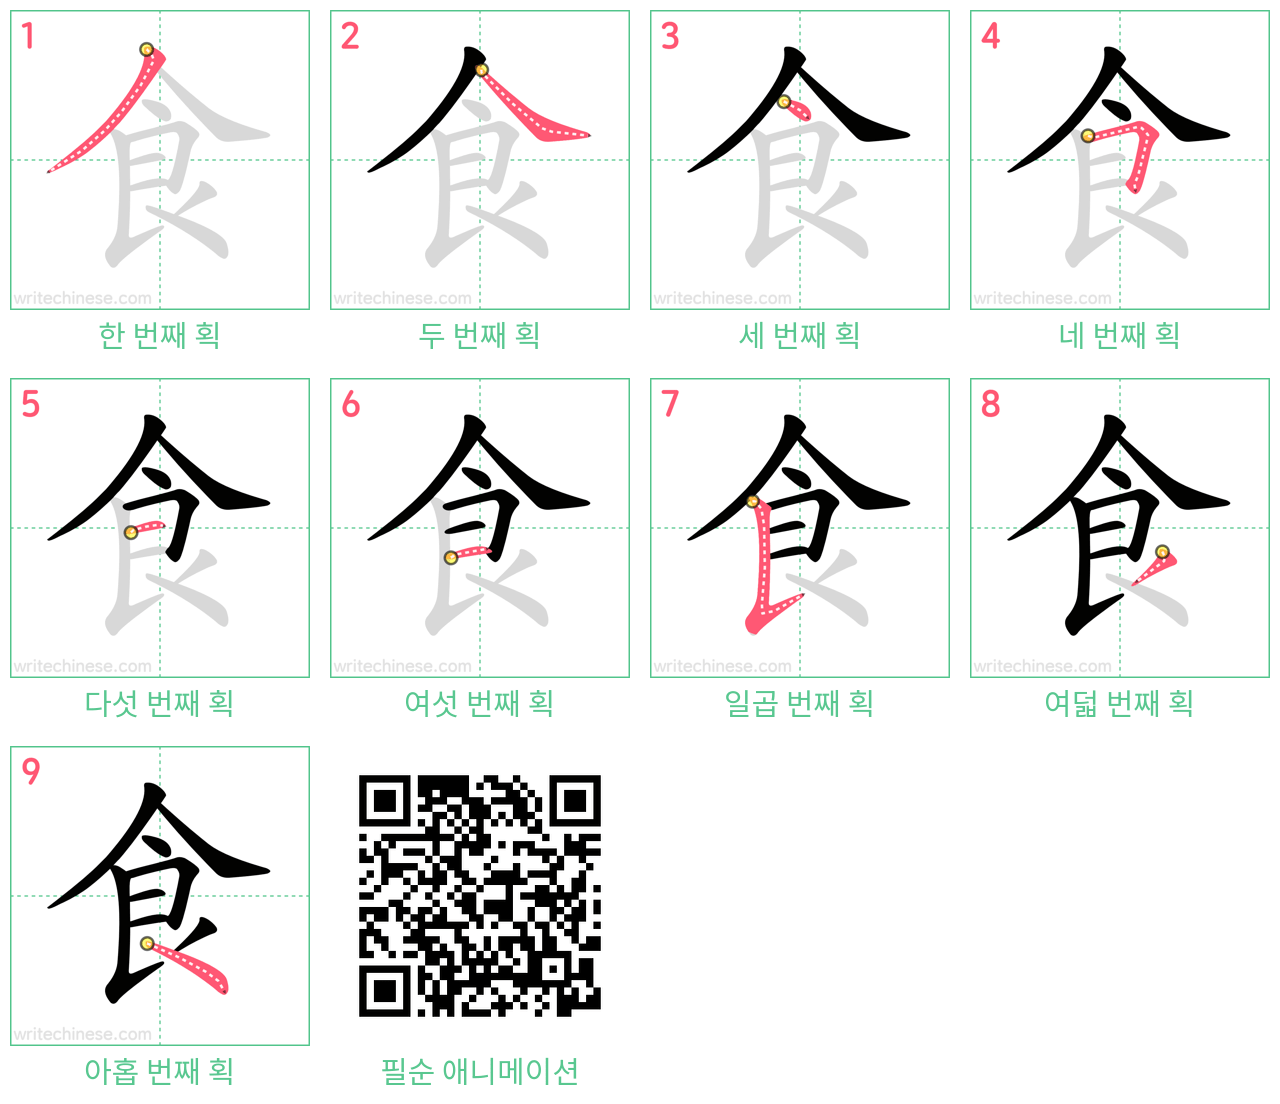 食 step-by-step stroke order diagrams